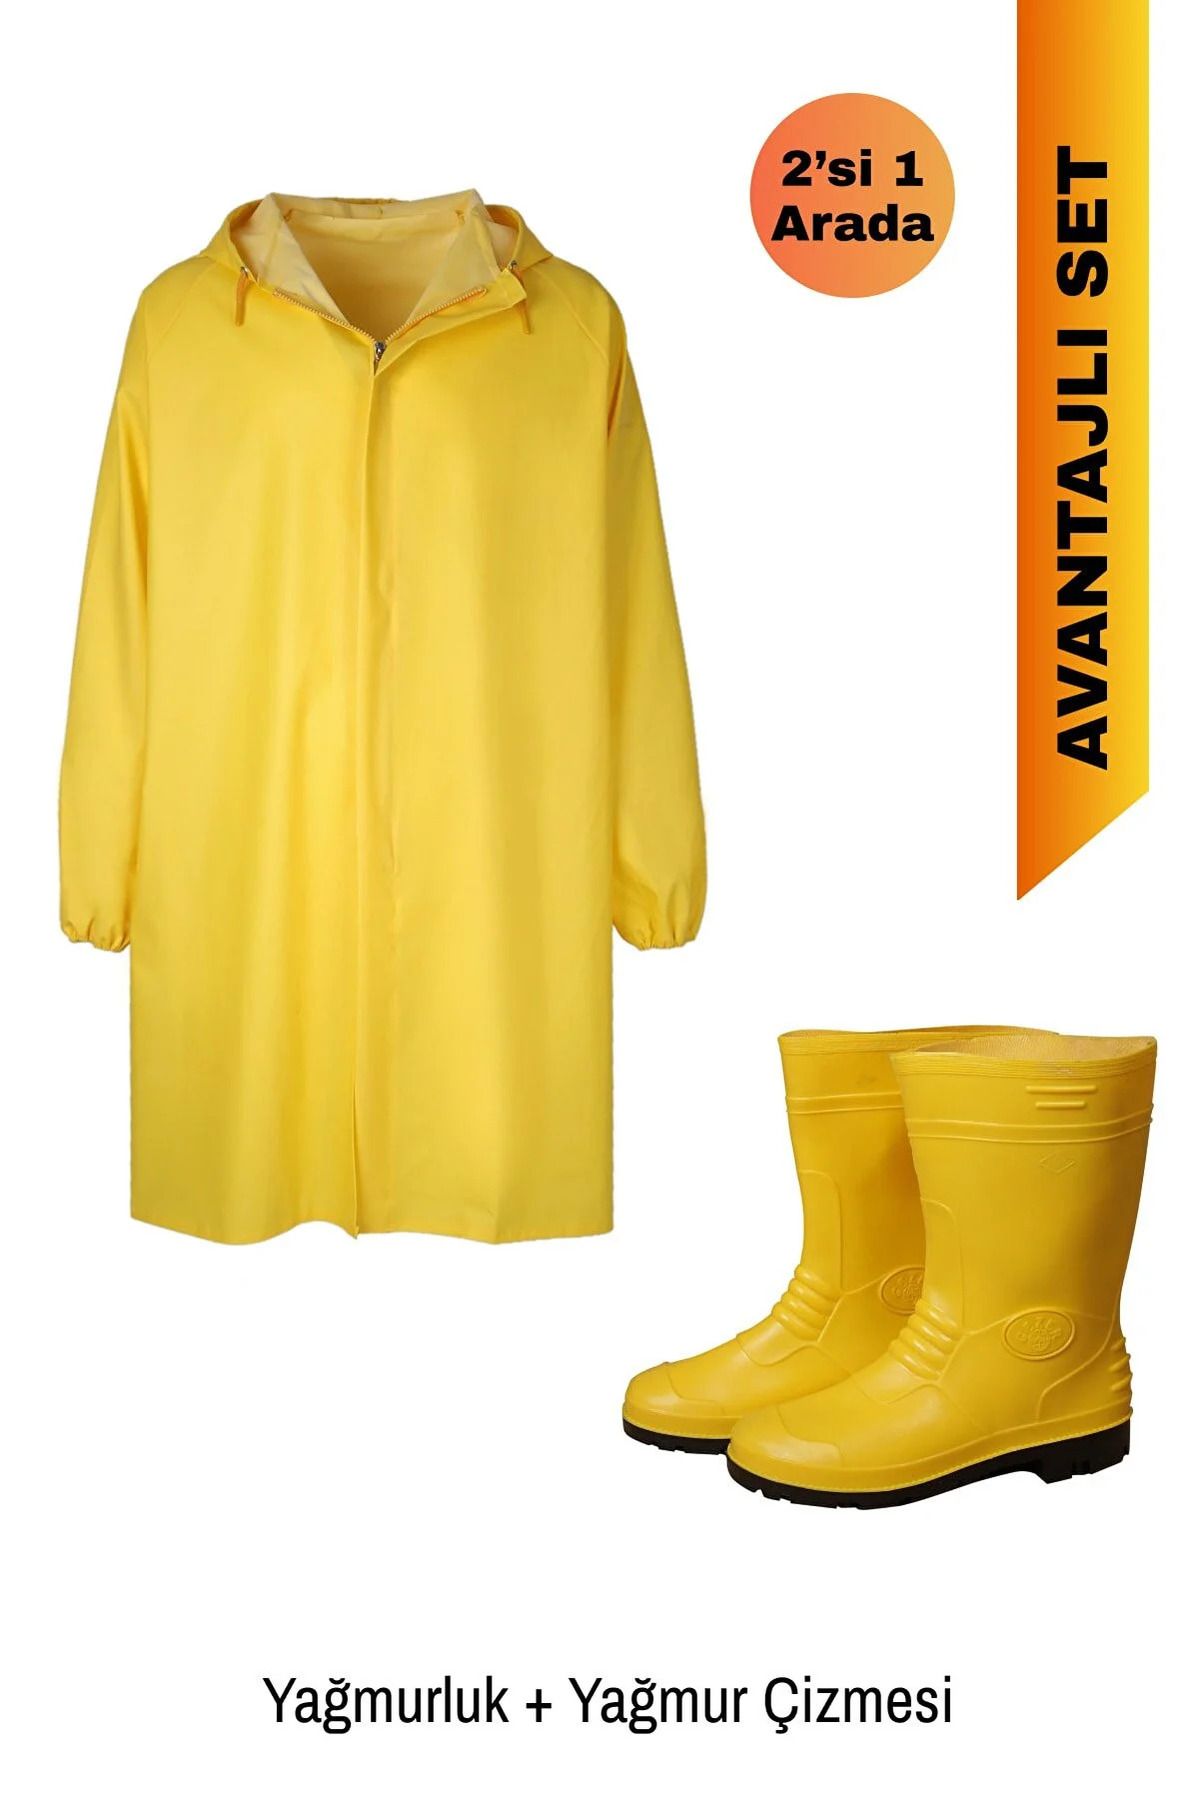 EYM Sarı Yağmurluk Çizme Set, 2'li Yağmurluk Seti